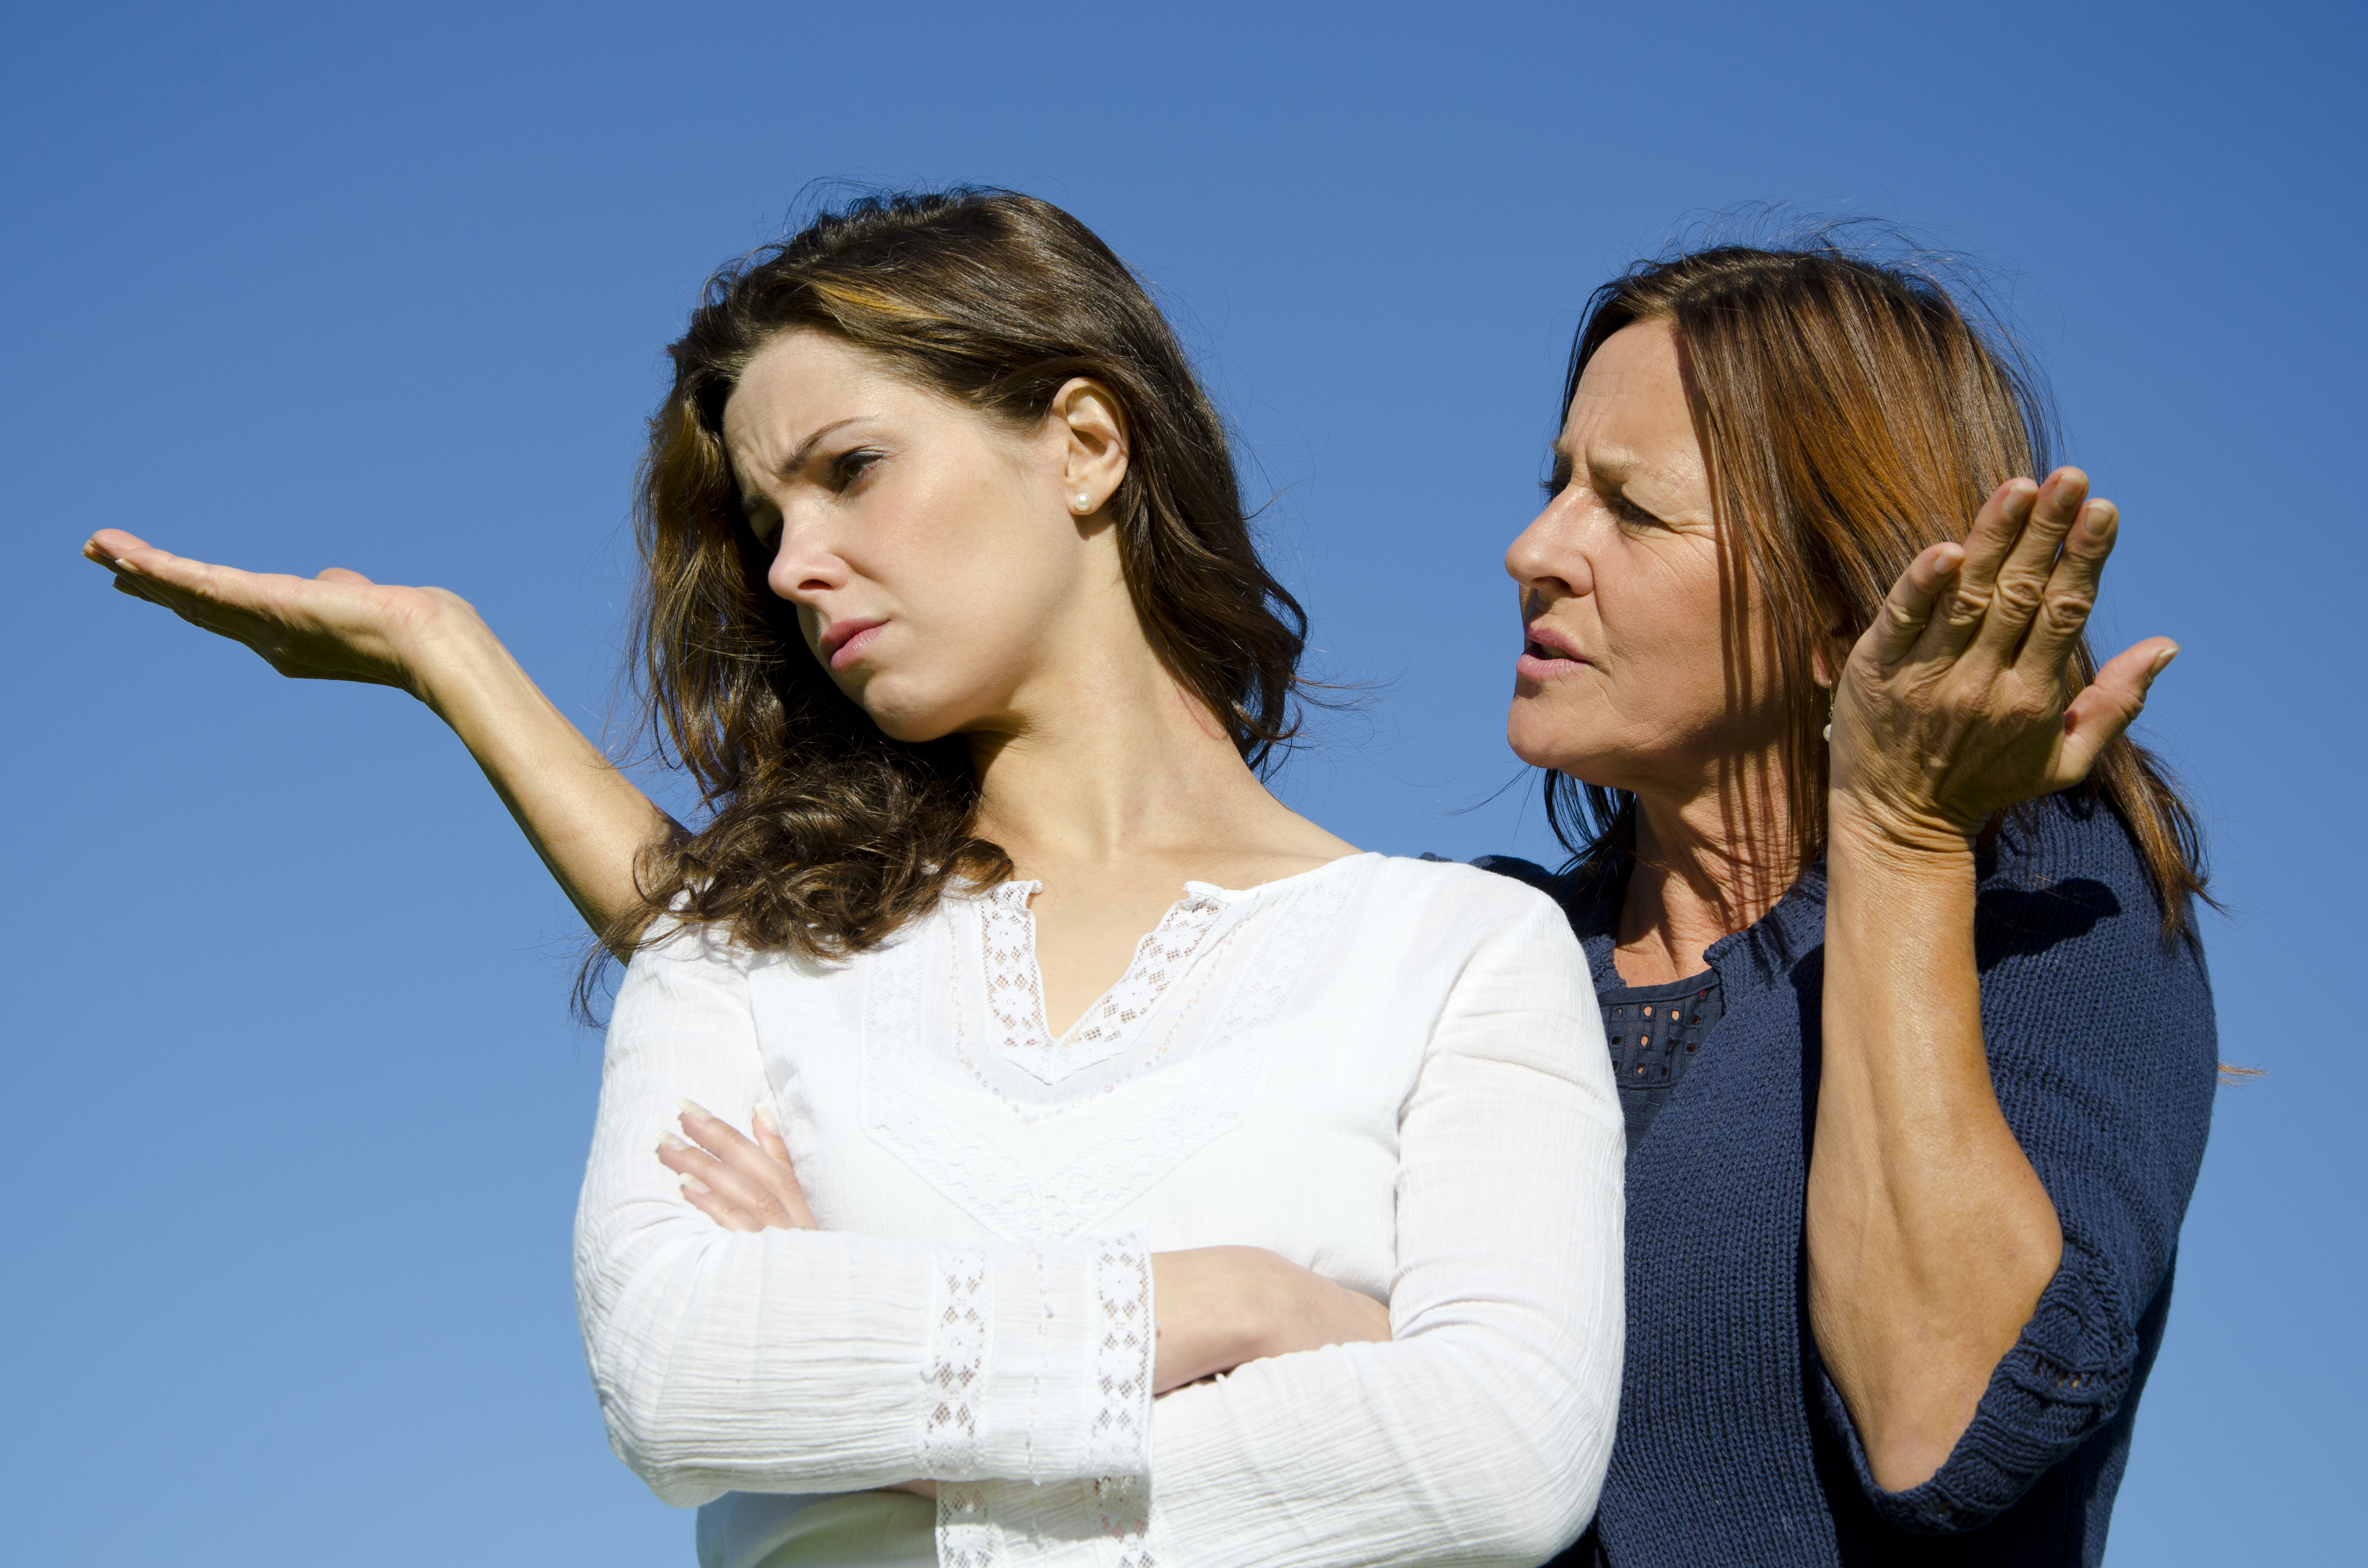 Eine Mutter und ihre Tochter im Streit | Quelle: Shutterstock